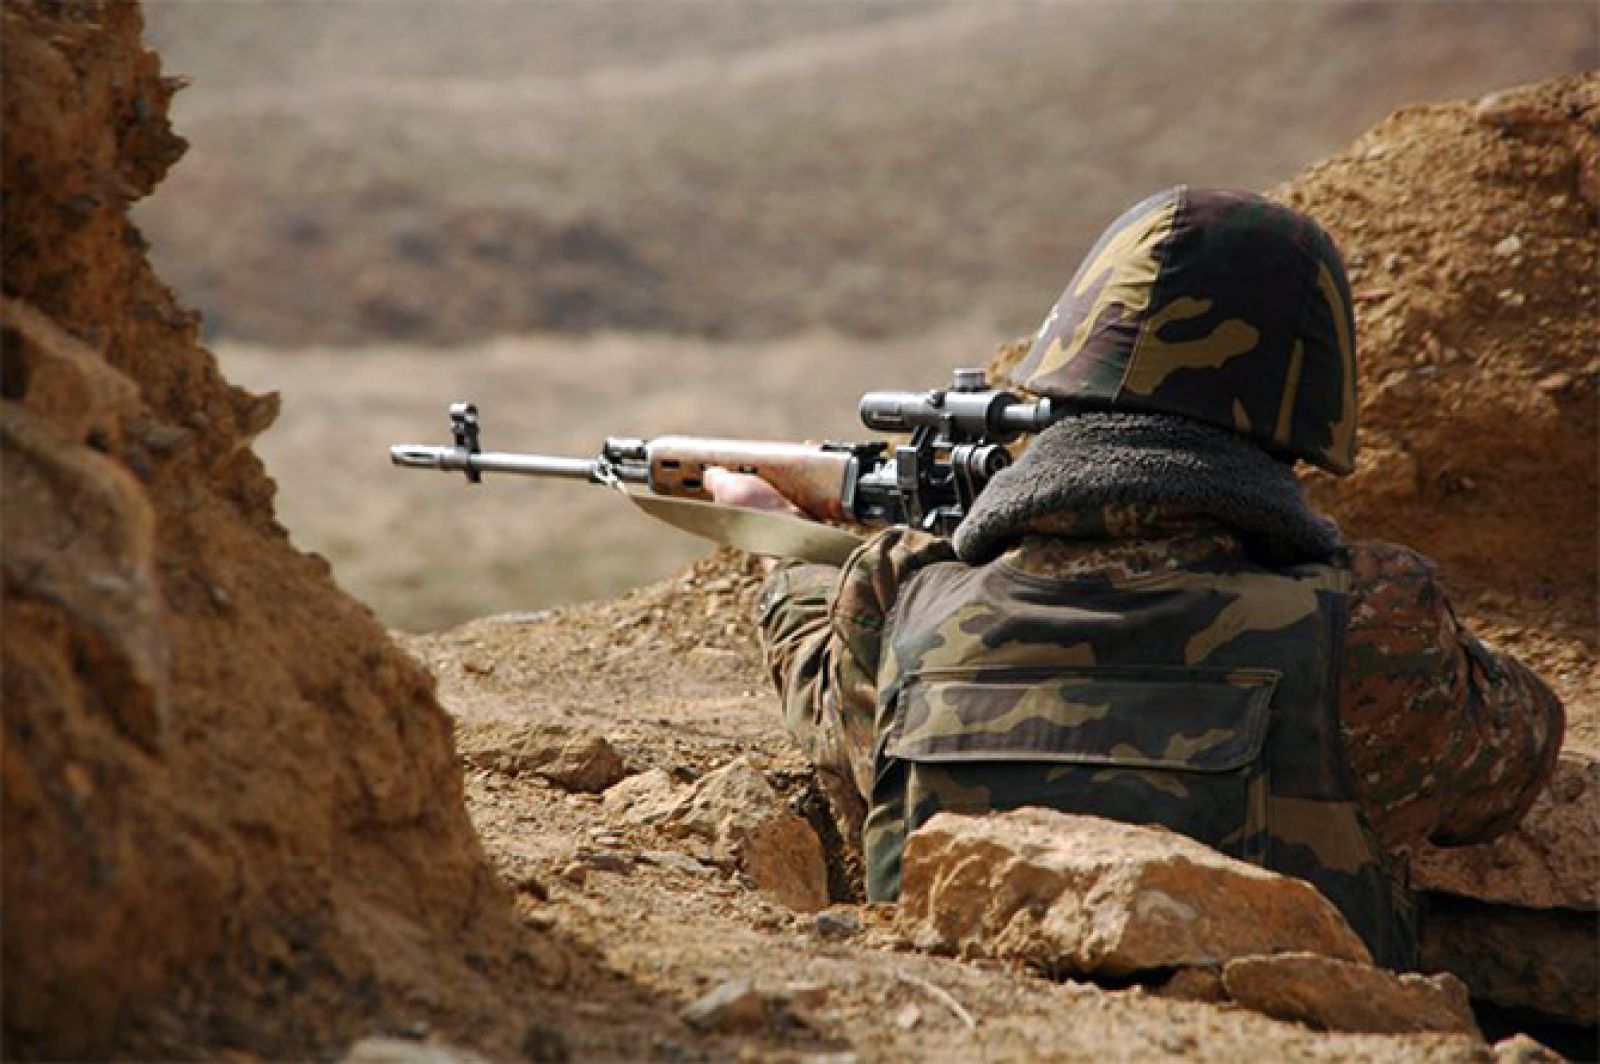 Ադրբեջանական դիպուկահարի կրակից ՀՀ ԶՈւ զինծառայող է վիրավորվել